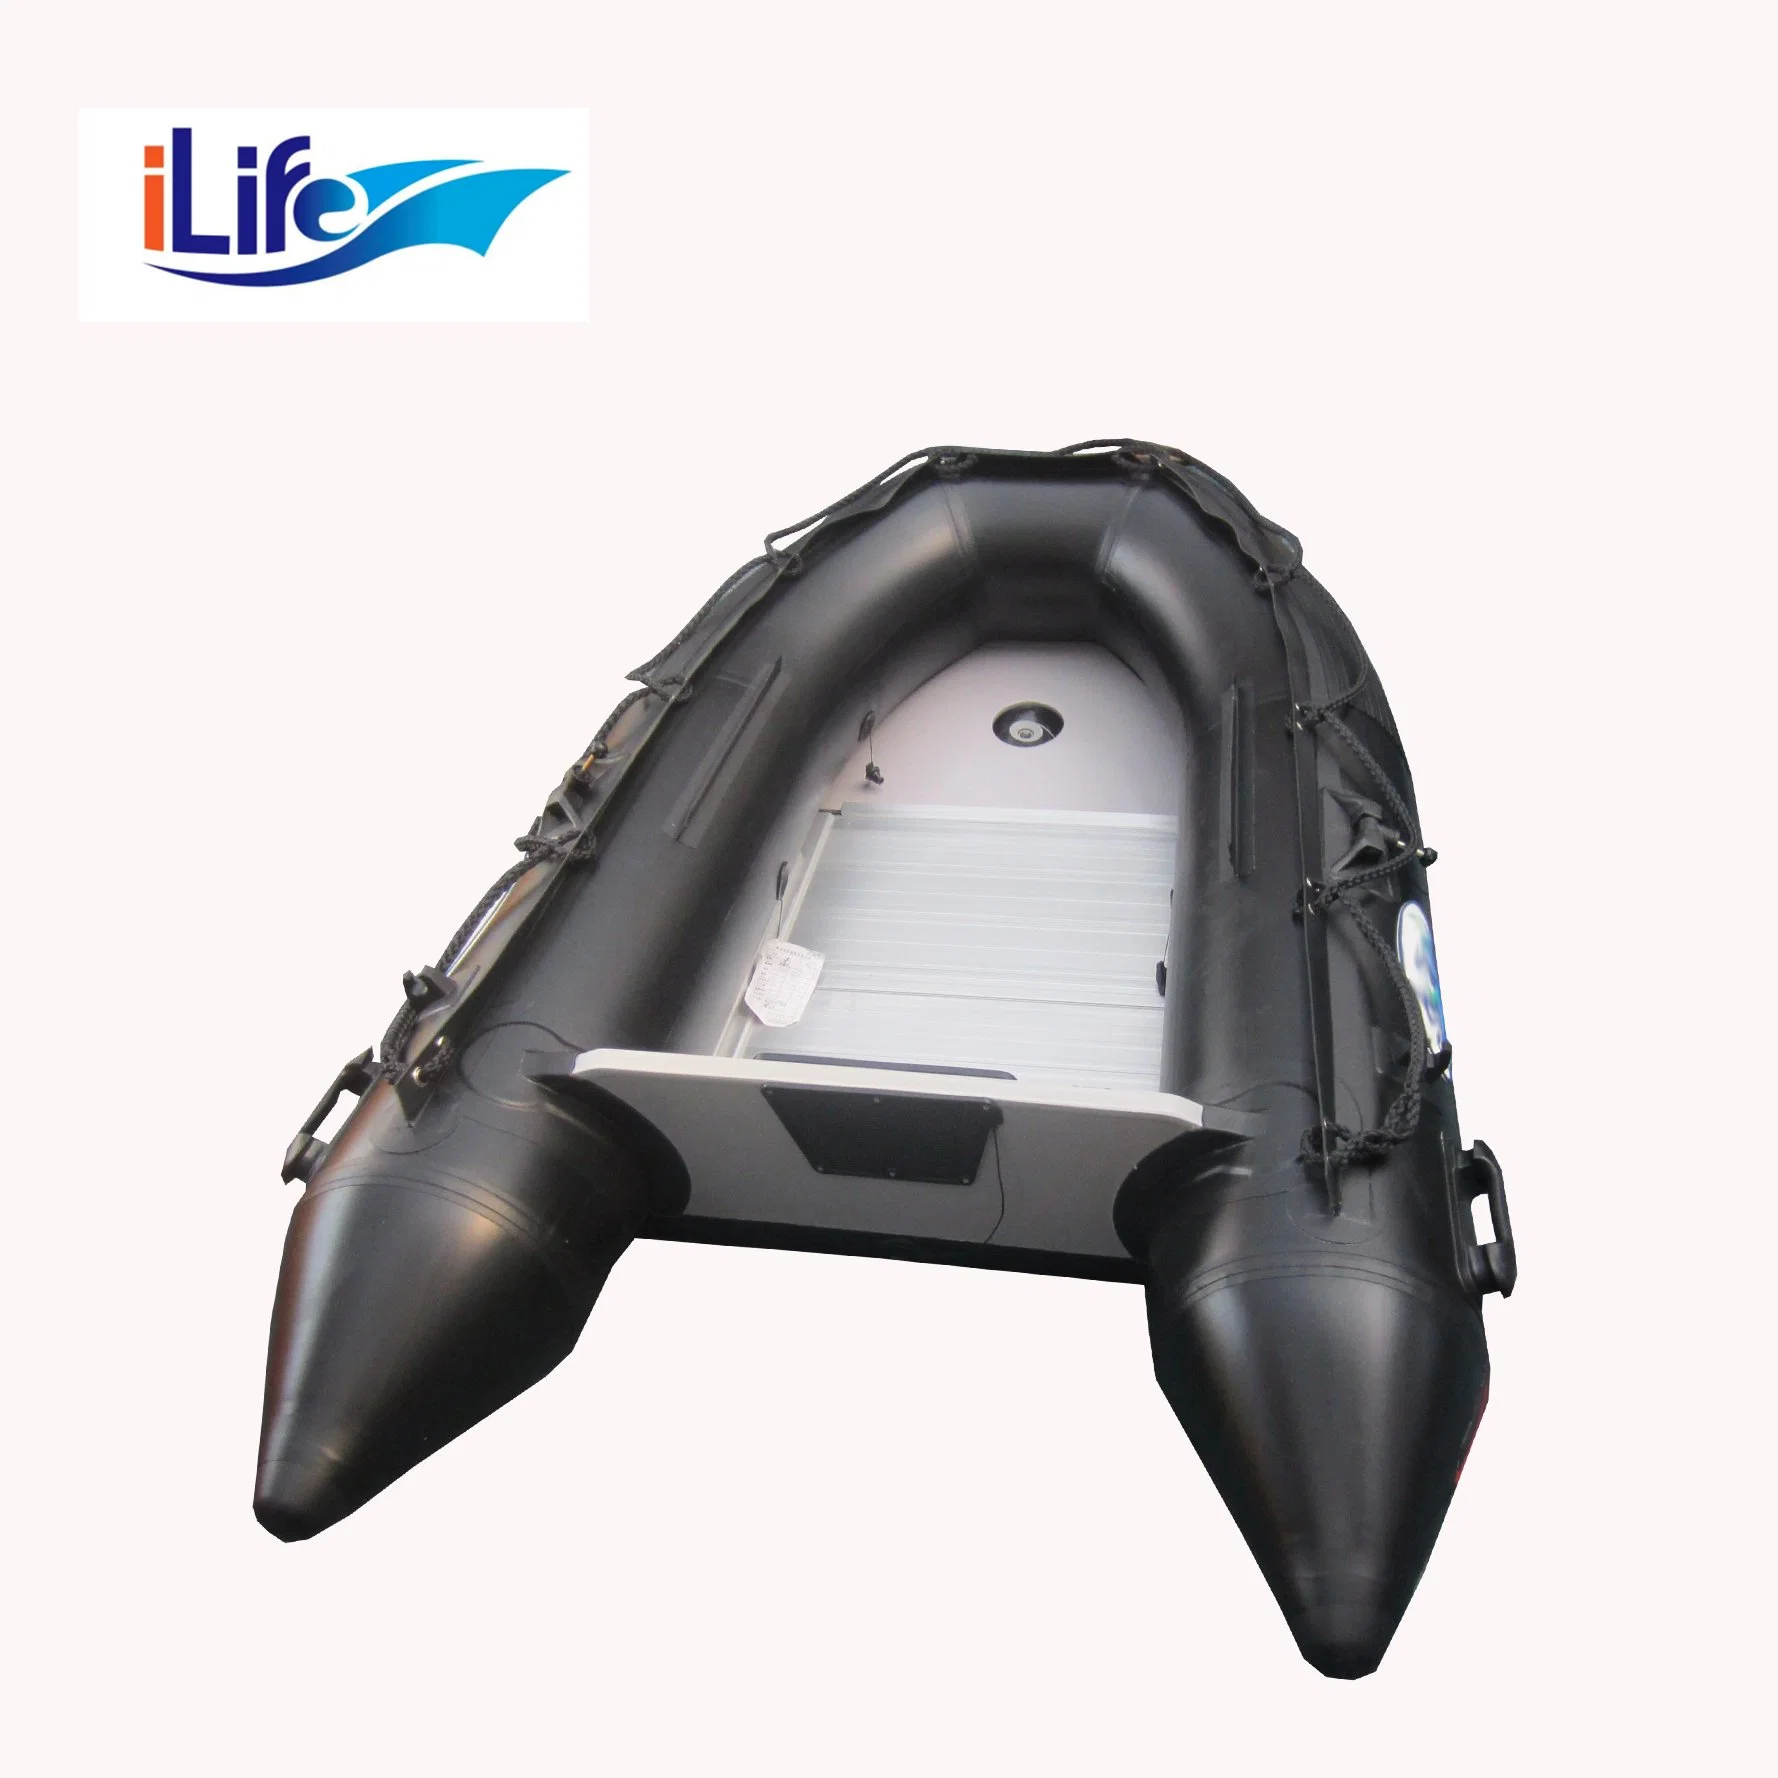 En PVC noir ilife/Hypalon Bateau de pêche de sauvetage gonflable en caoutchouc avec l'aluminium/Drop Stitch Air/plancher en contreplaqué pour 2 personnes